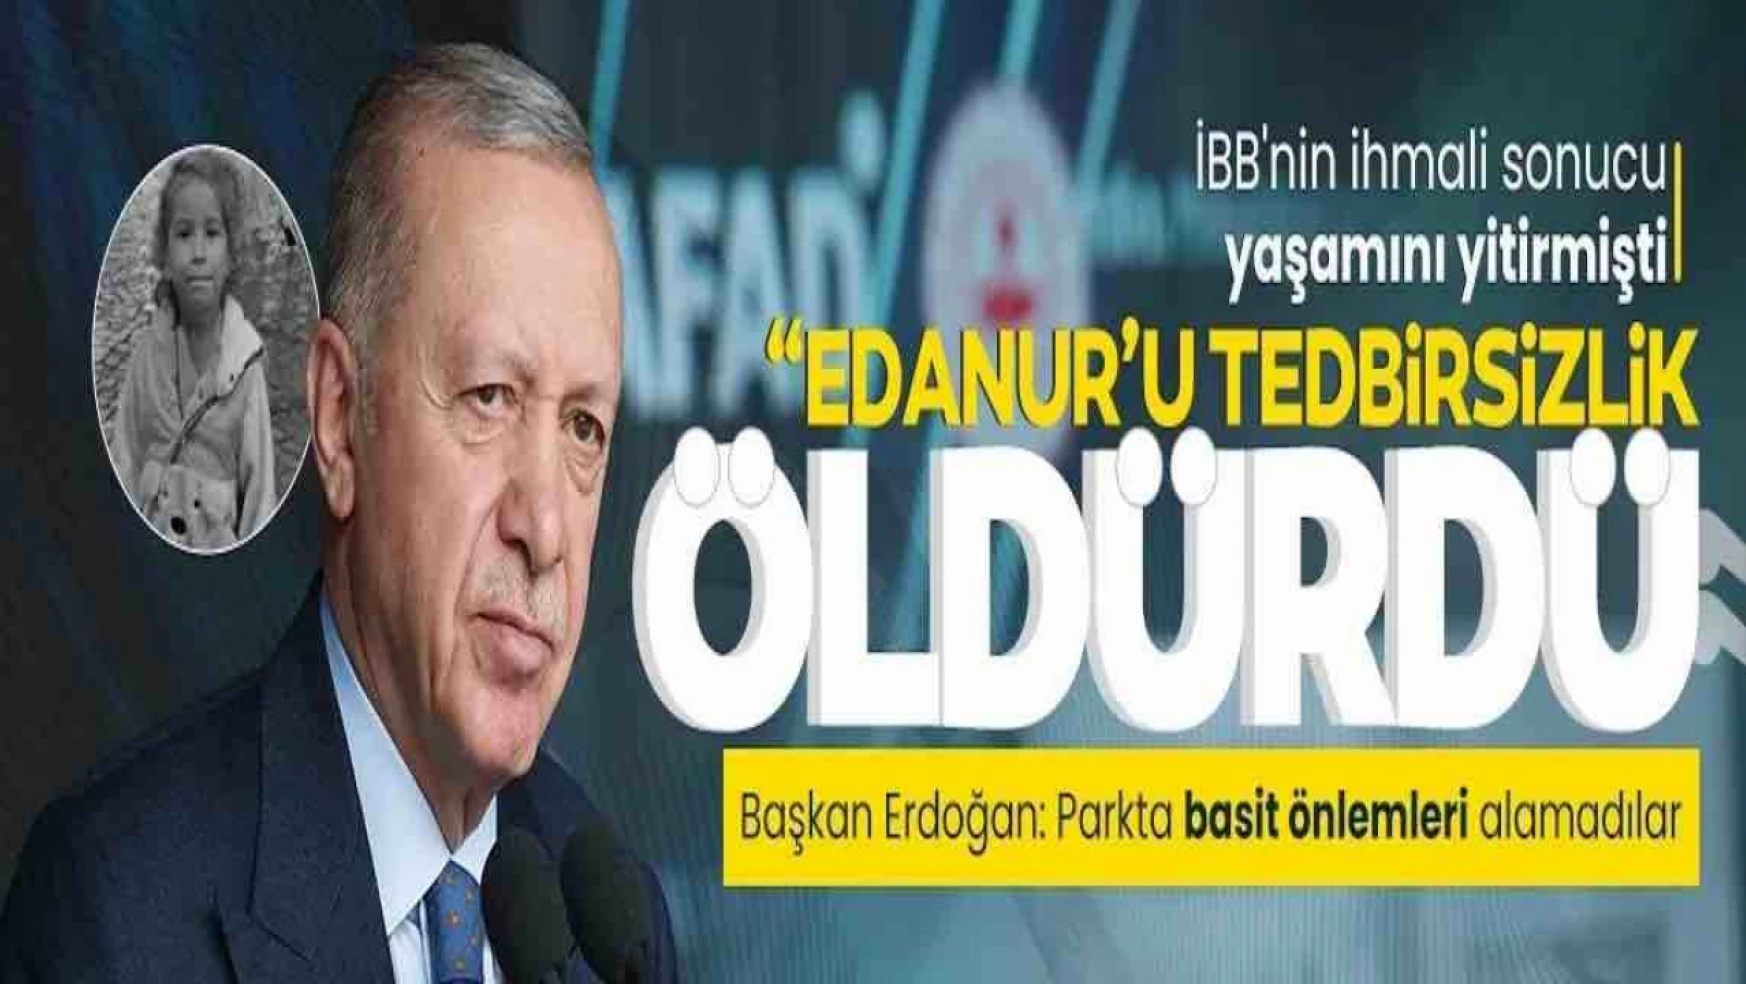 Erdoğan'dan İBB'ye 'minik Edanur' tepkisi: Tedbir alınmadığı için hayatını kaybetti